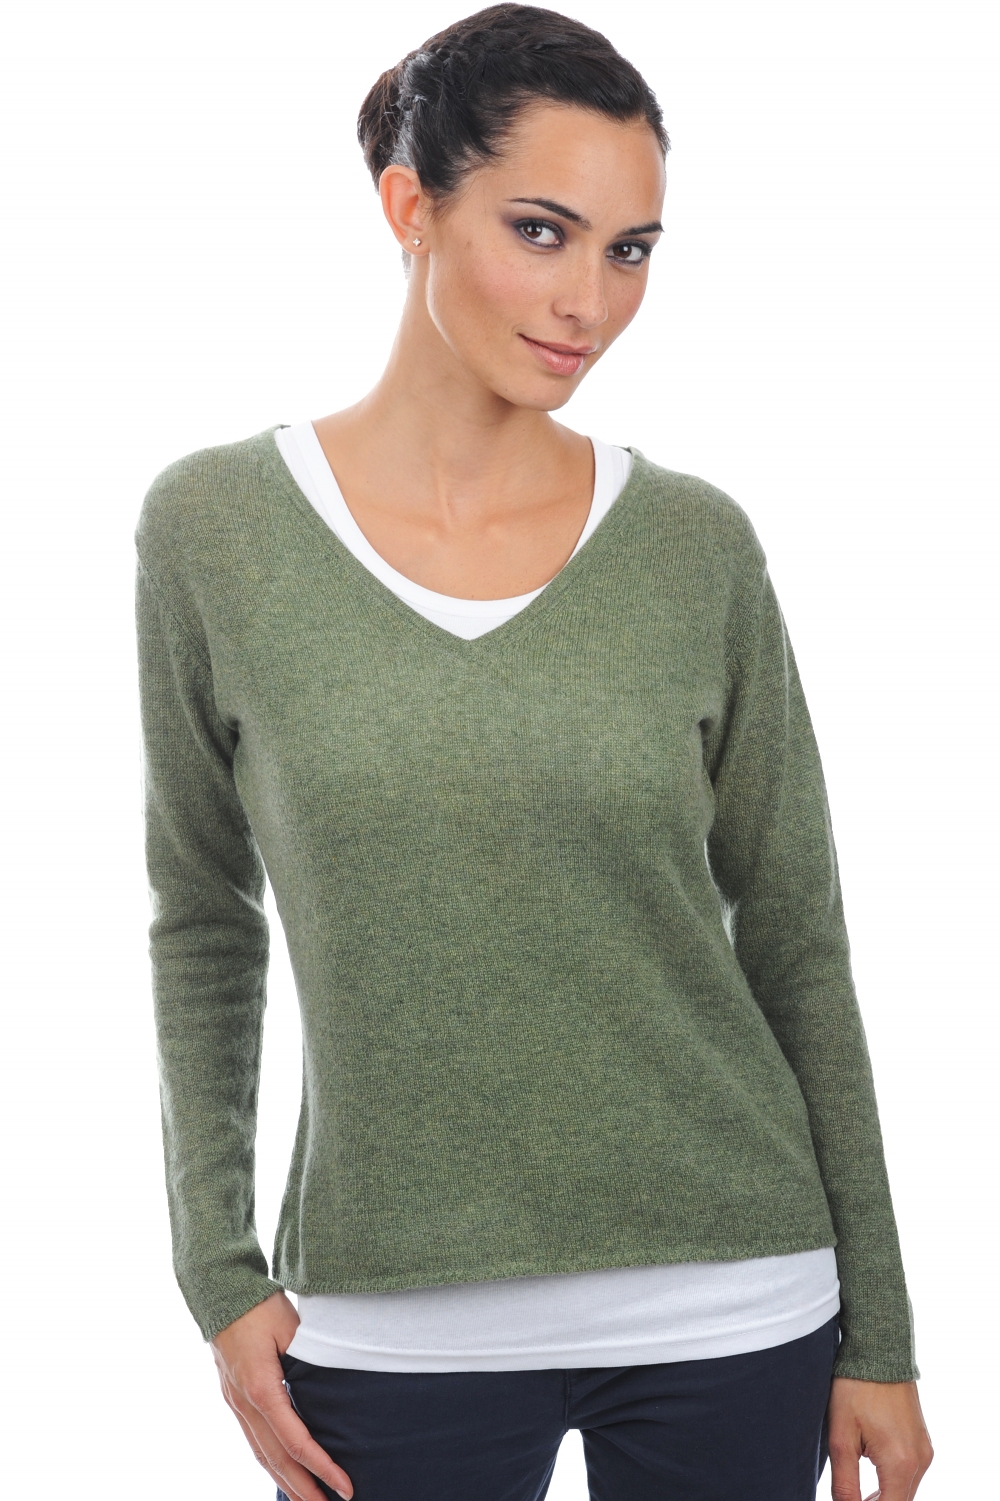 Kasjmier dames kasjmier basic pullovers voor lage prijzen flavie groen gemeleerd xs